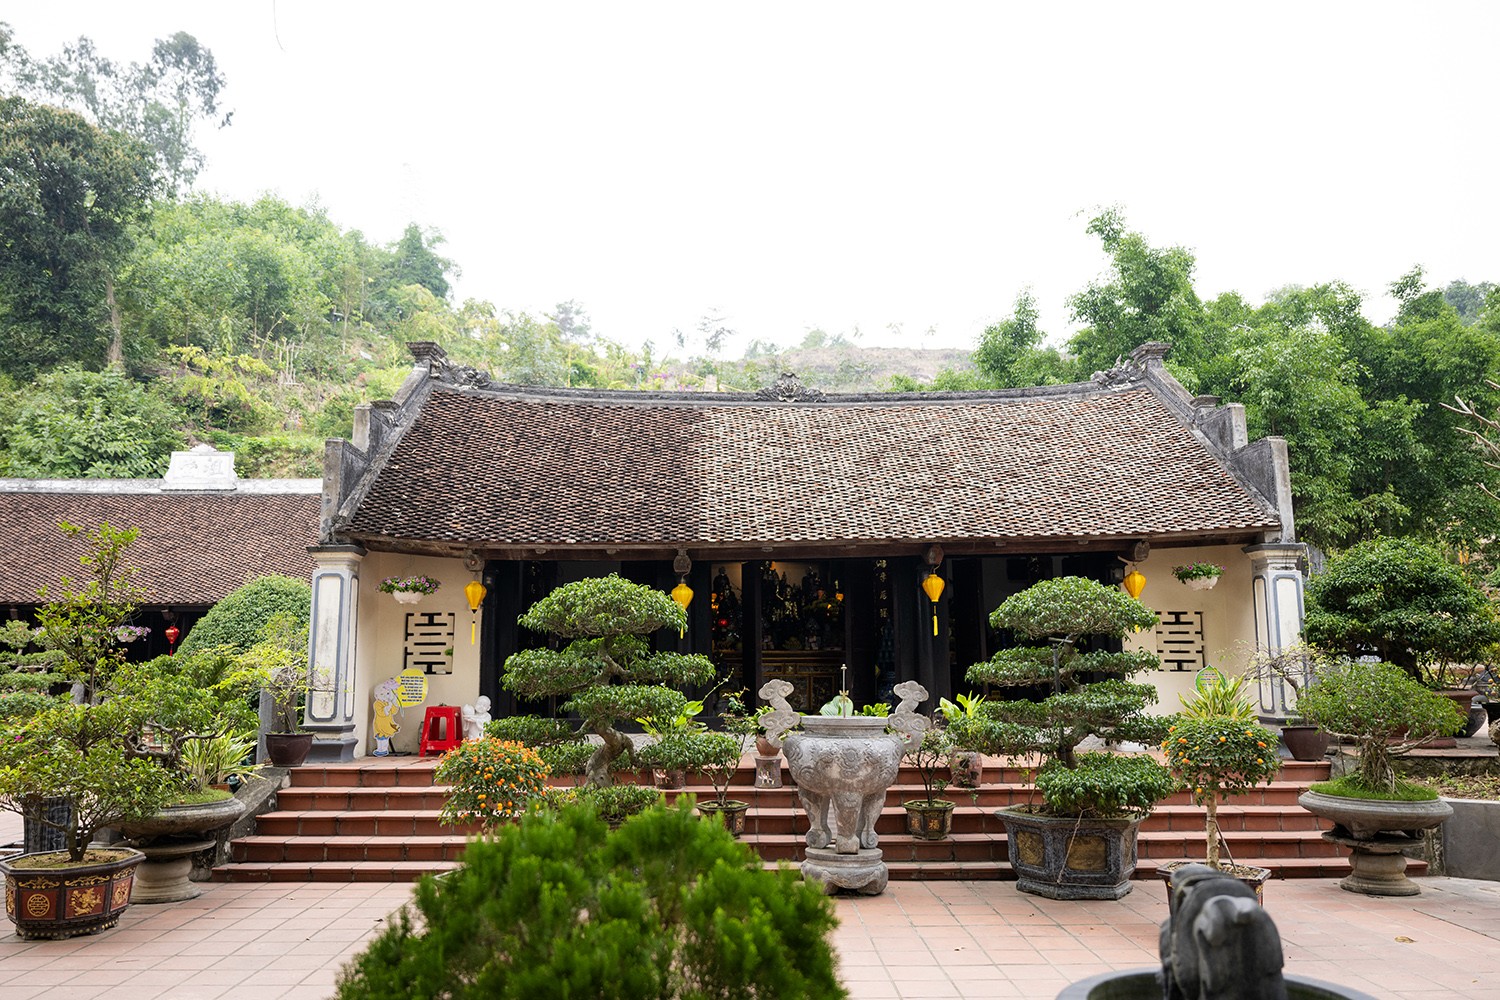 Chùa Ngô Xá (hay còn gọi là Phi Lai tự) nằm ngay dưới chân núi Chương Sơn, thuộc thôn Ngô Xá (xã Yên Lợi, huyện Ý Yên, tỉnh Nam Định).